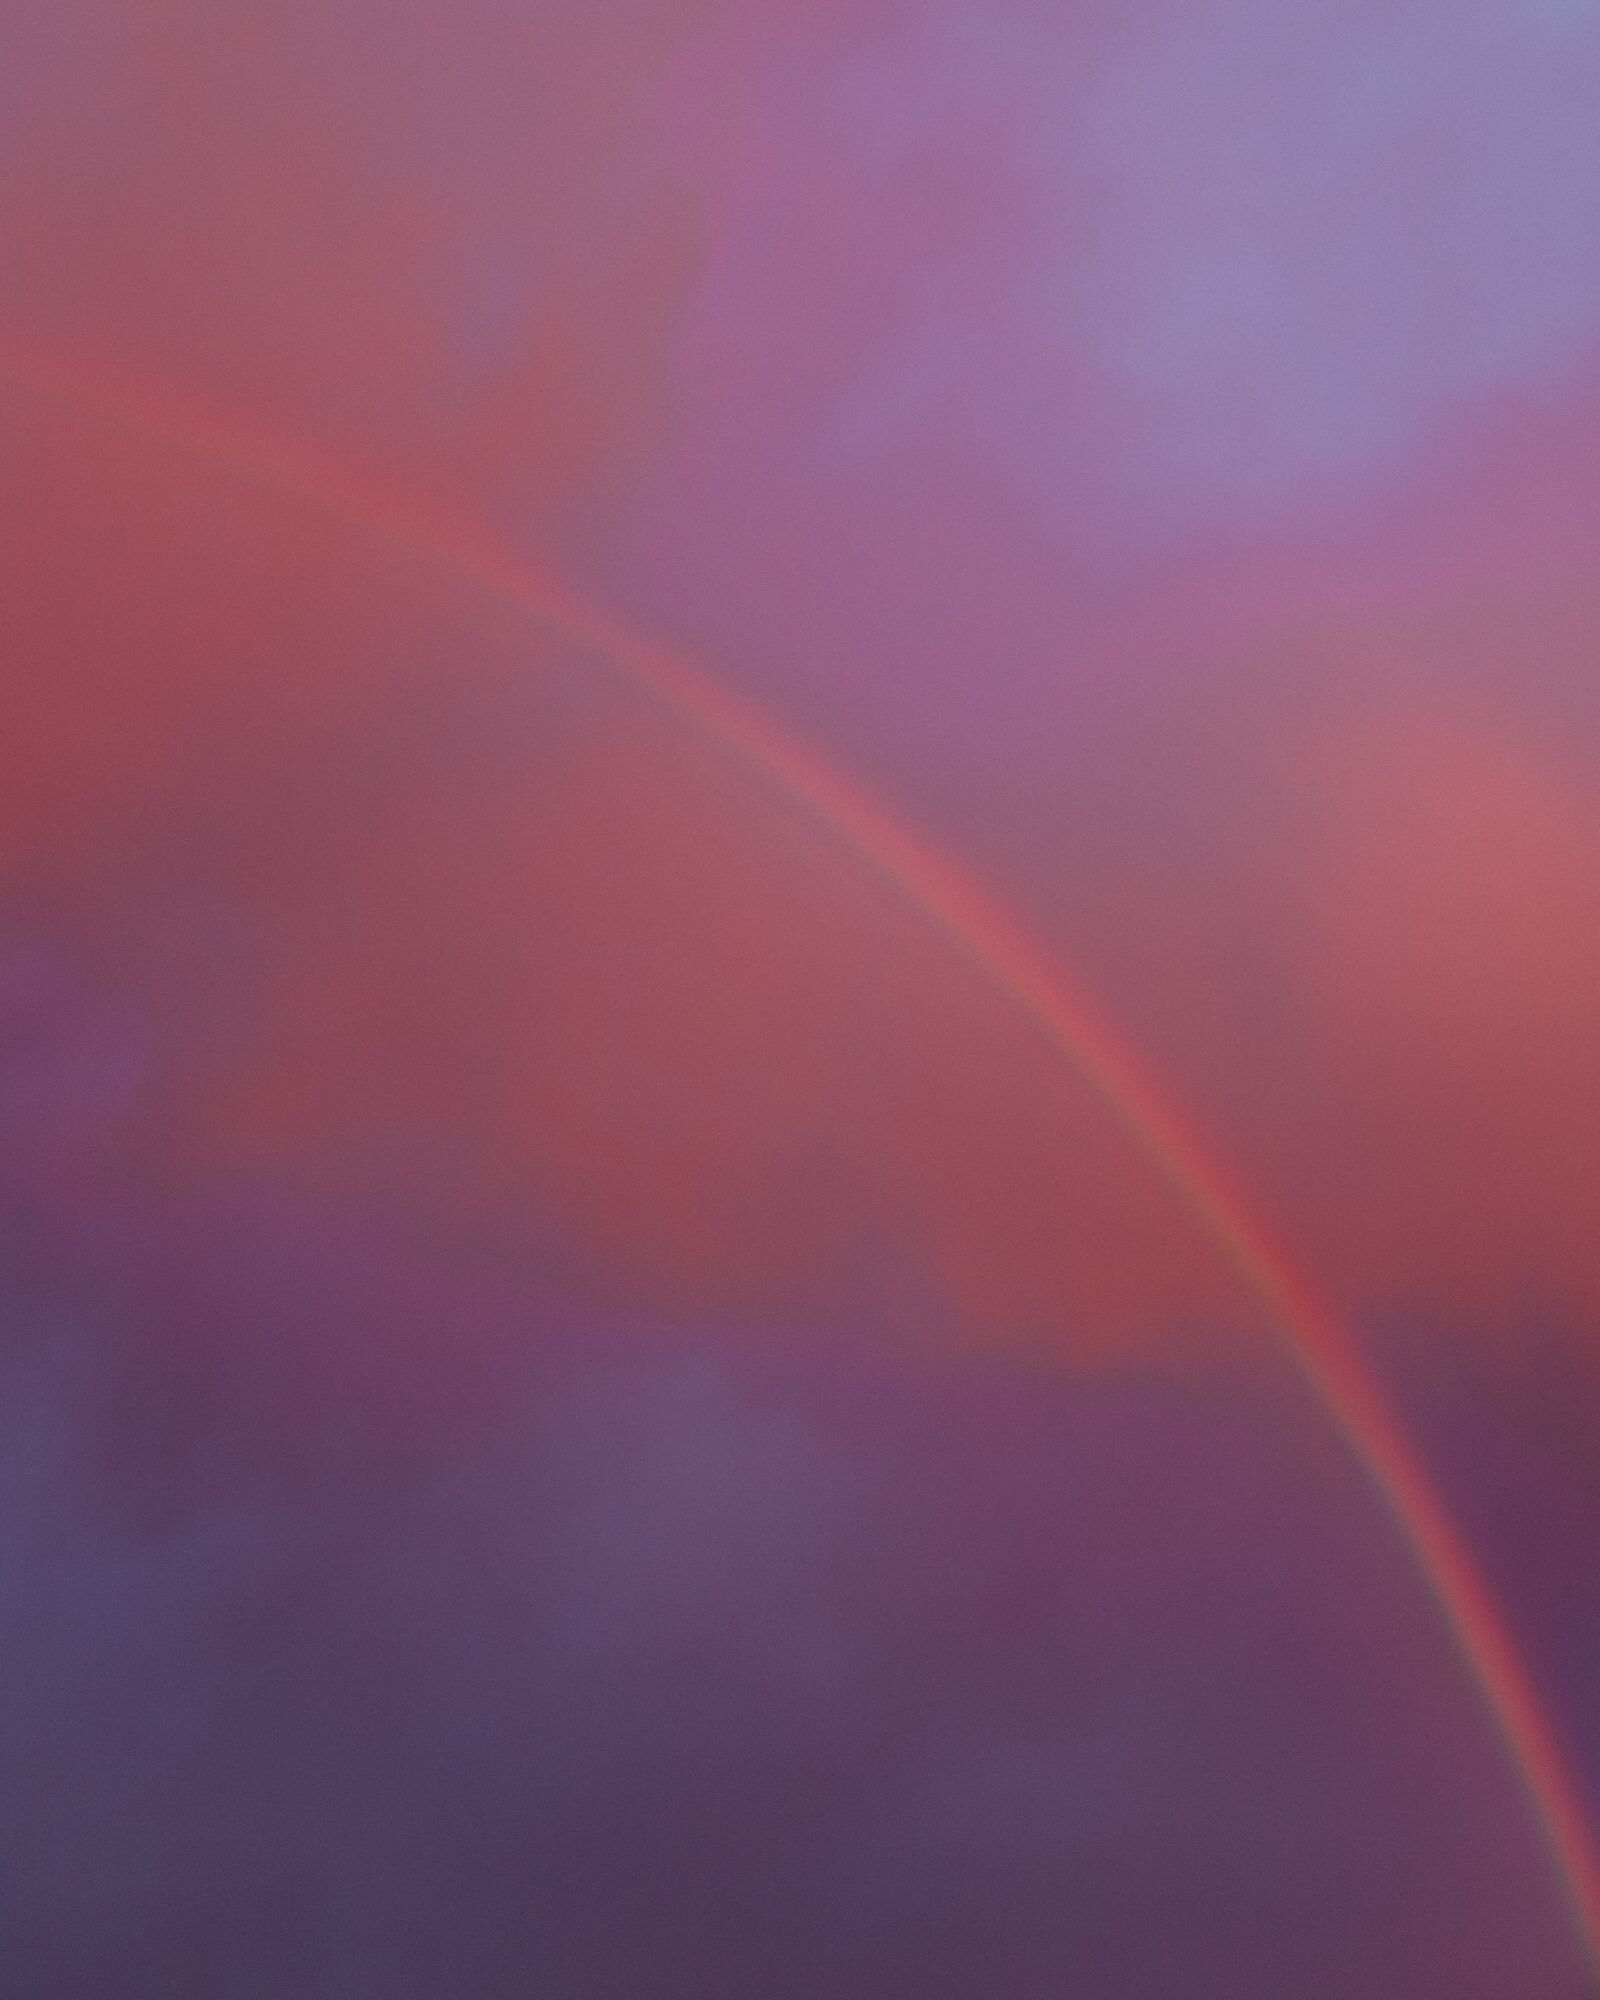 Canon EOS 6D Mark II sample photo. Rainbow, bow, rain photography